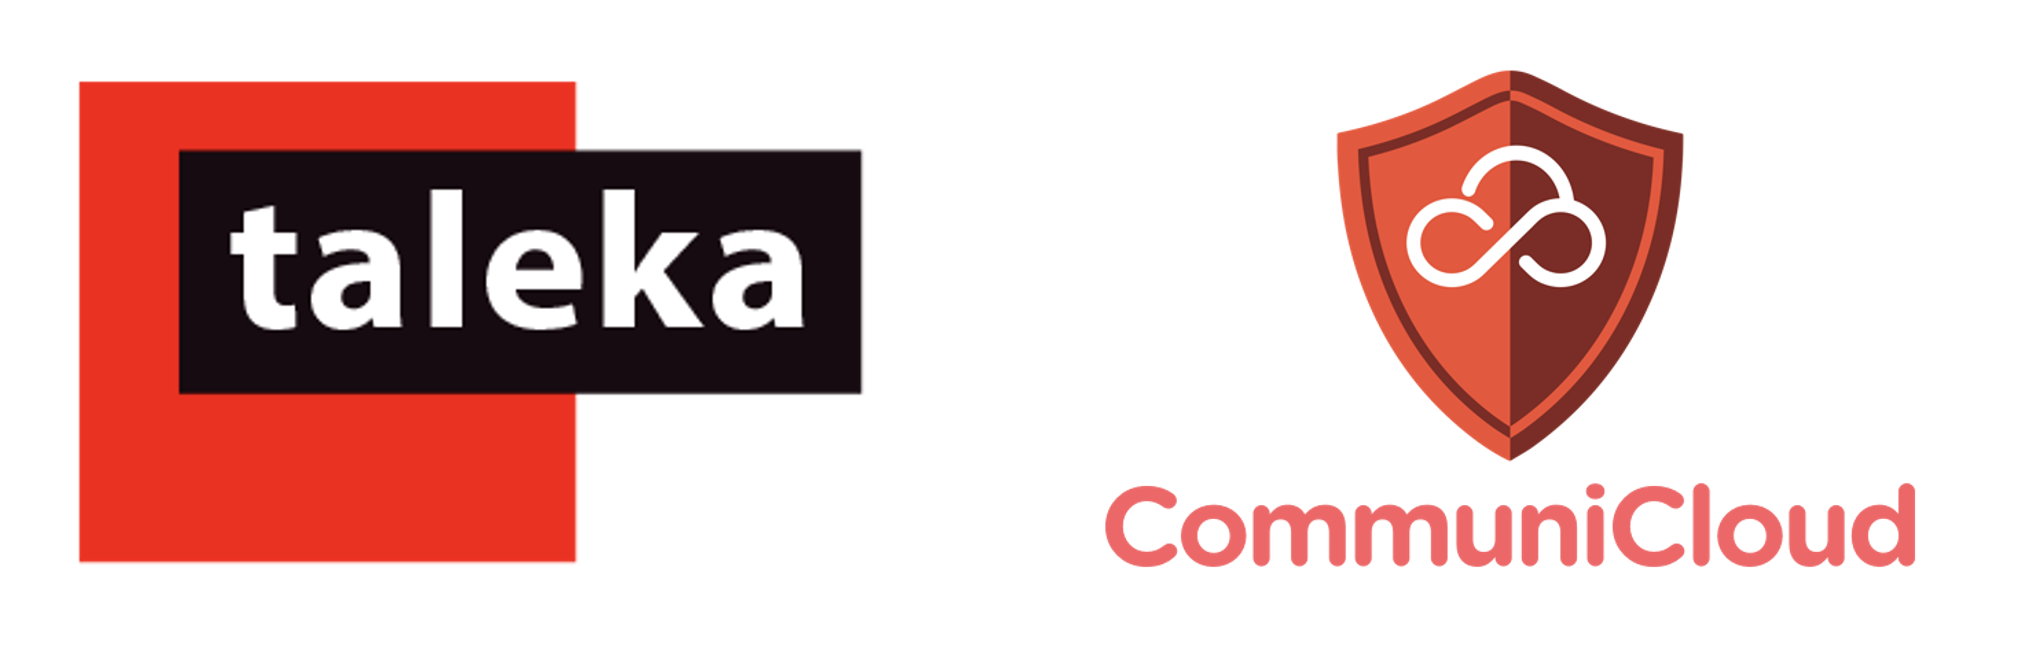 Taleka CommuniCloud Partnership